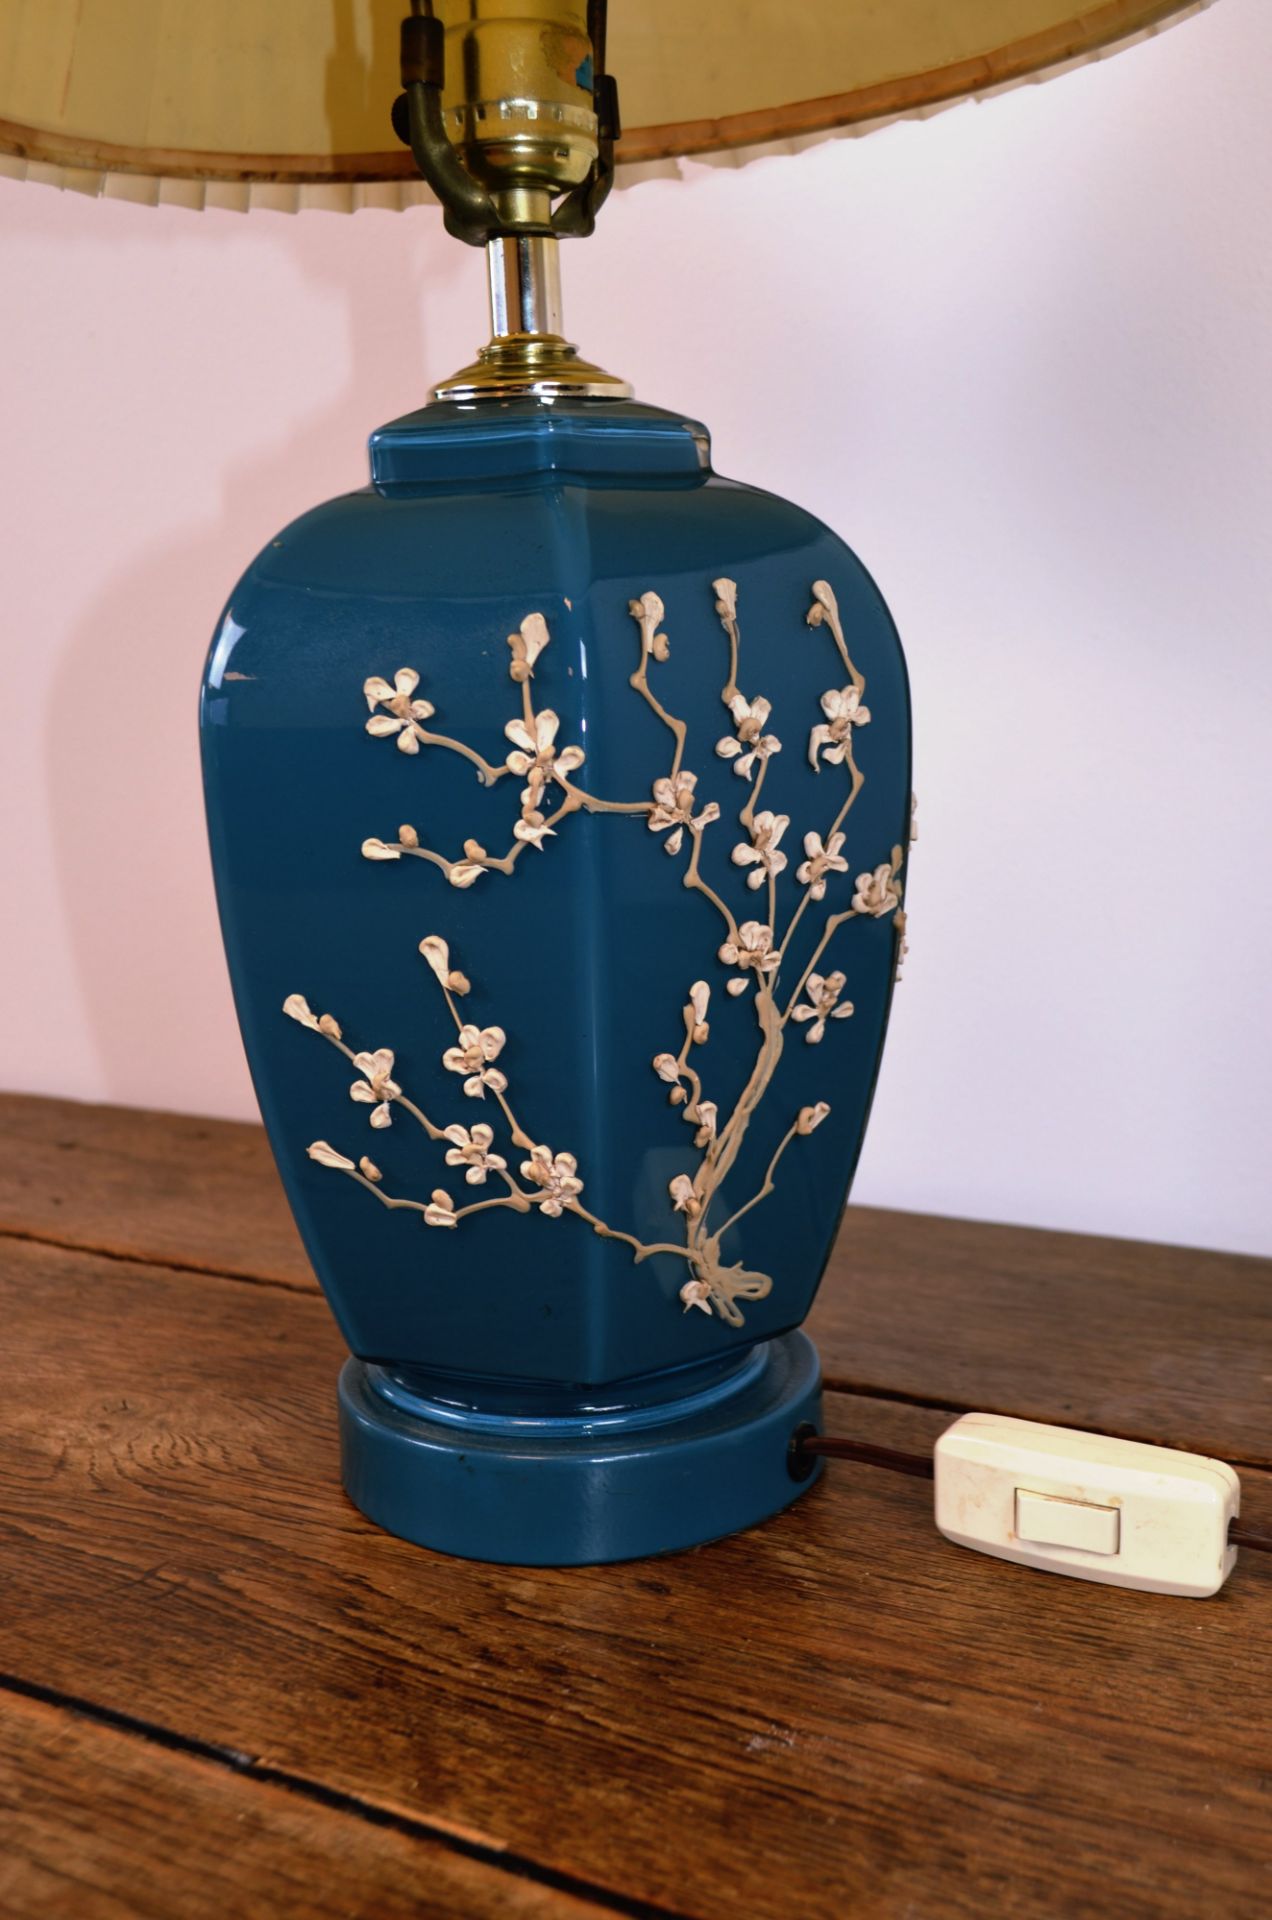 Lampe bleue orné de petites fleurs blanches  - Image 2 of 3